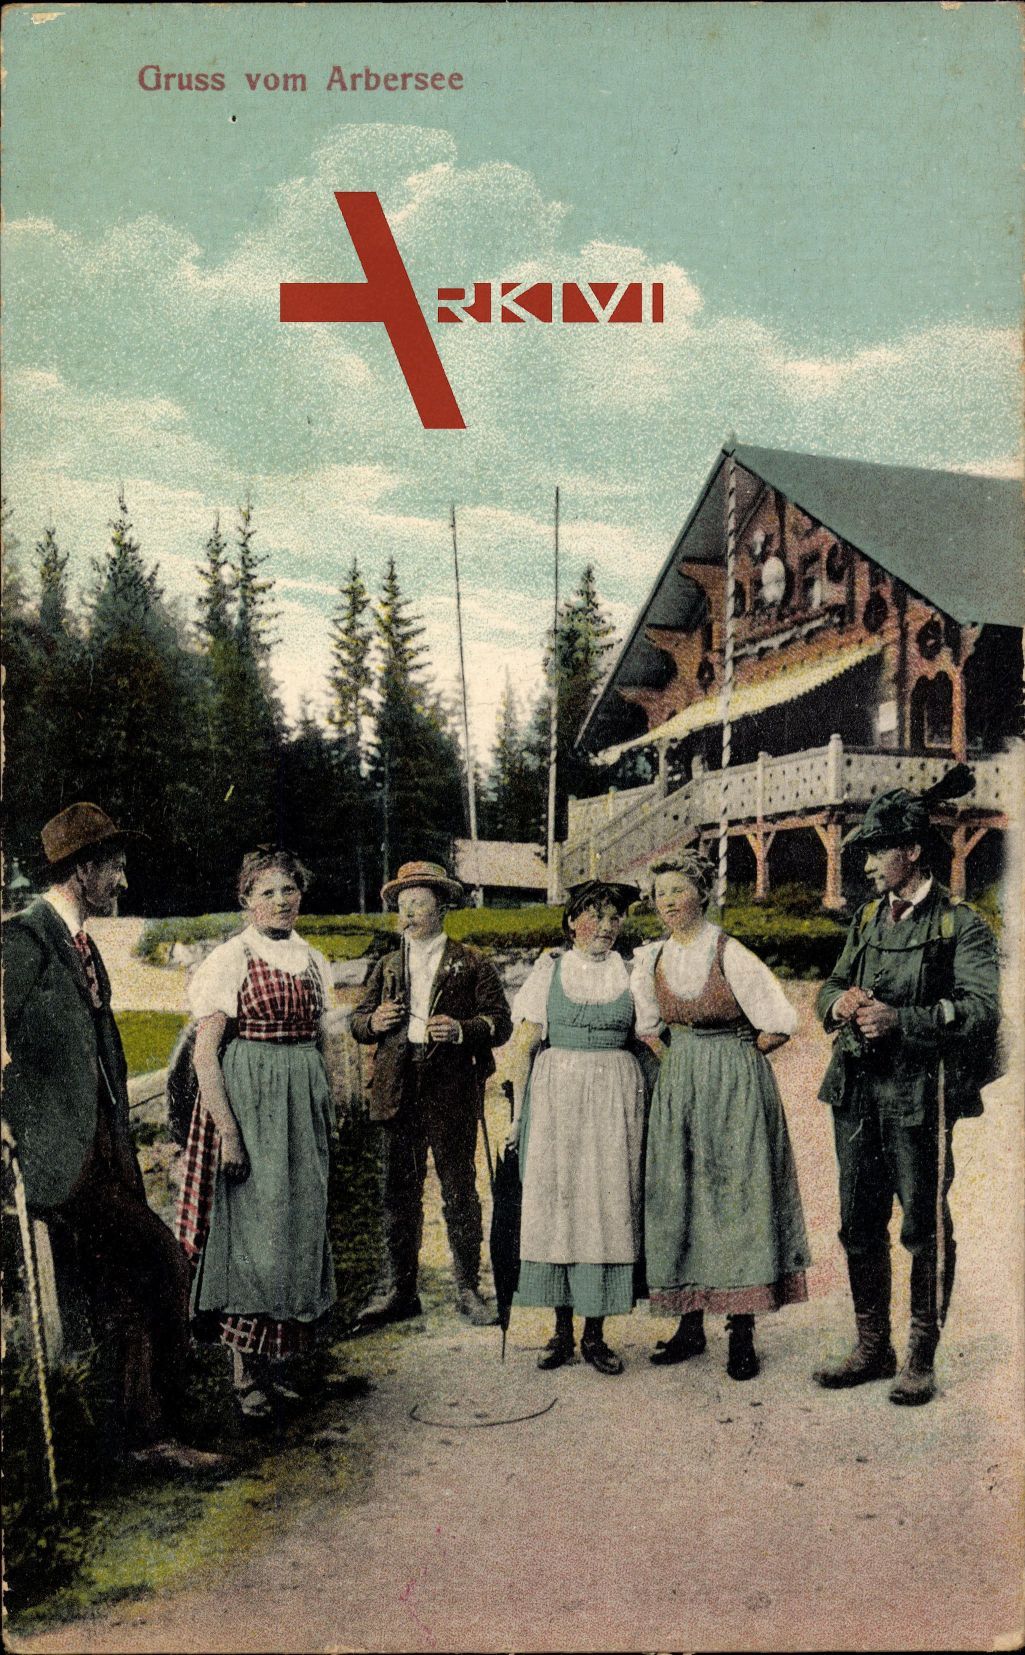 Gruß vom Arbersee, Traditionelle bayrische Trachten um 1919